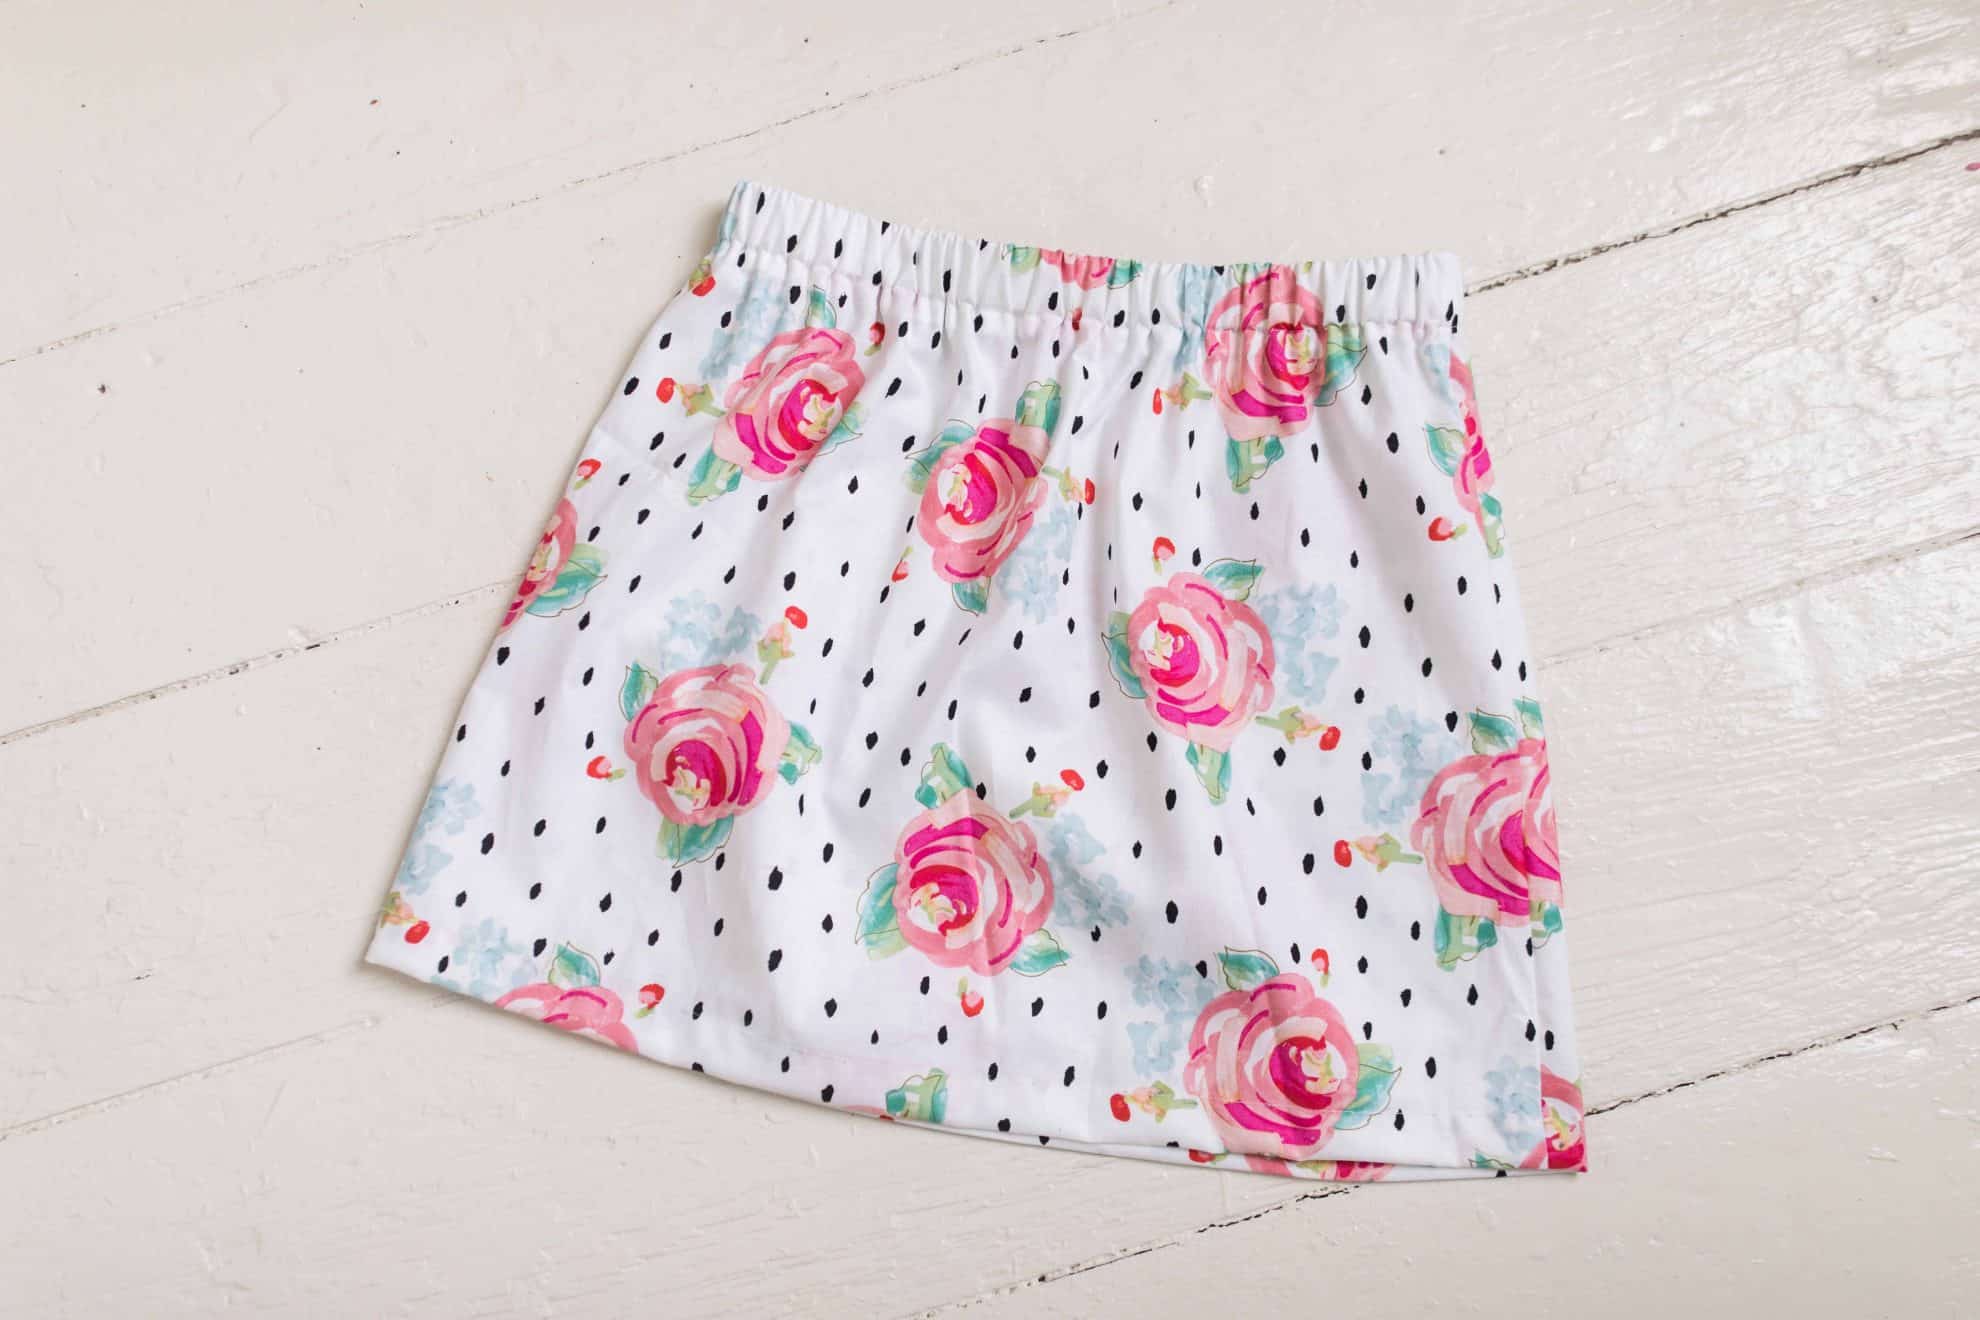 lovely handmade skirt sewing tutorial